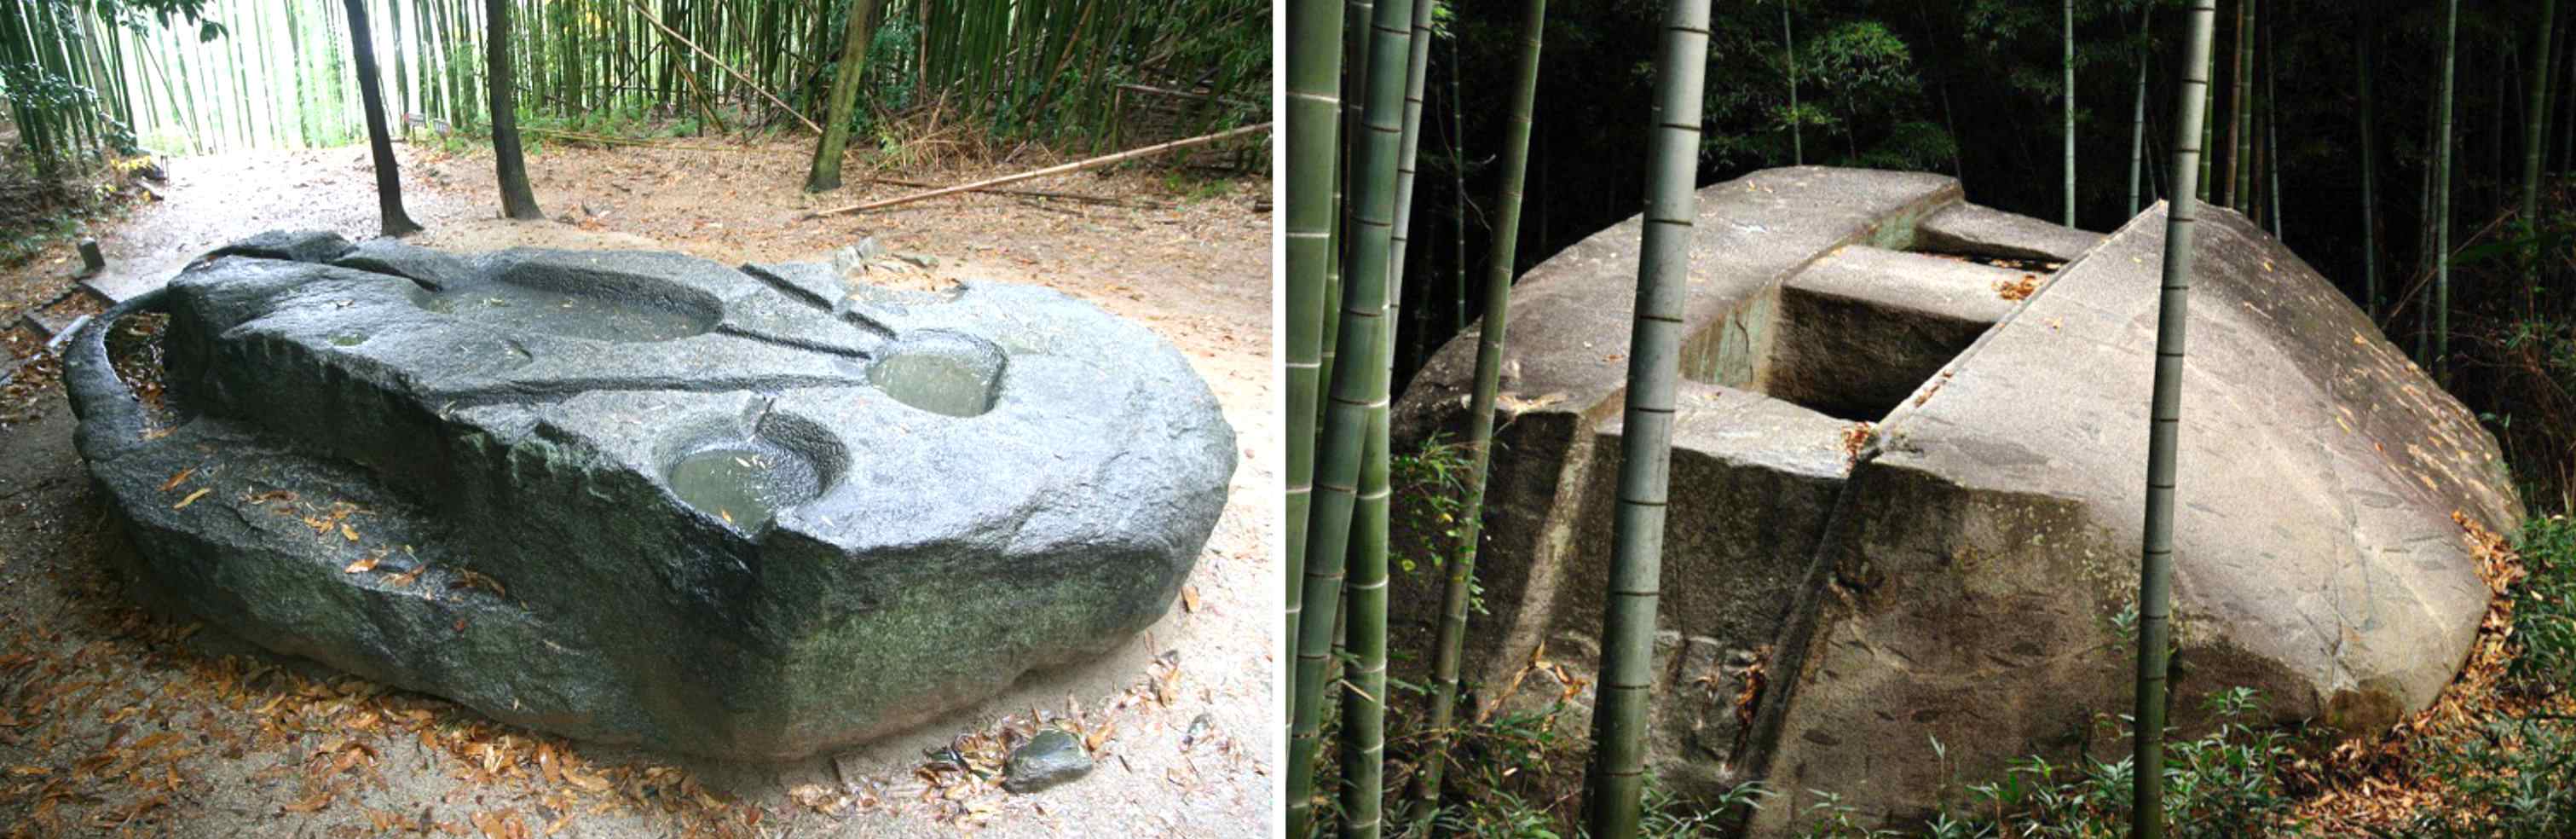 Cơ chế cổ đại: Phải chăng những người khổng lồ đã xây dựng nên khối cự thạch nặng hàng trăm tấn của Nhật Bản này? 3